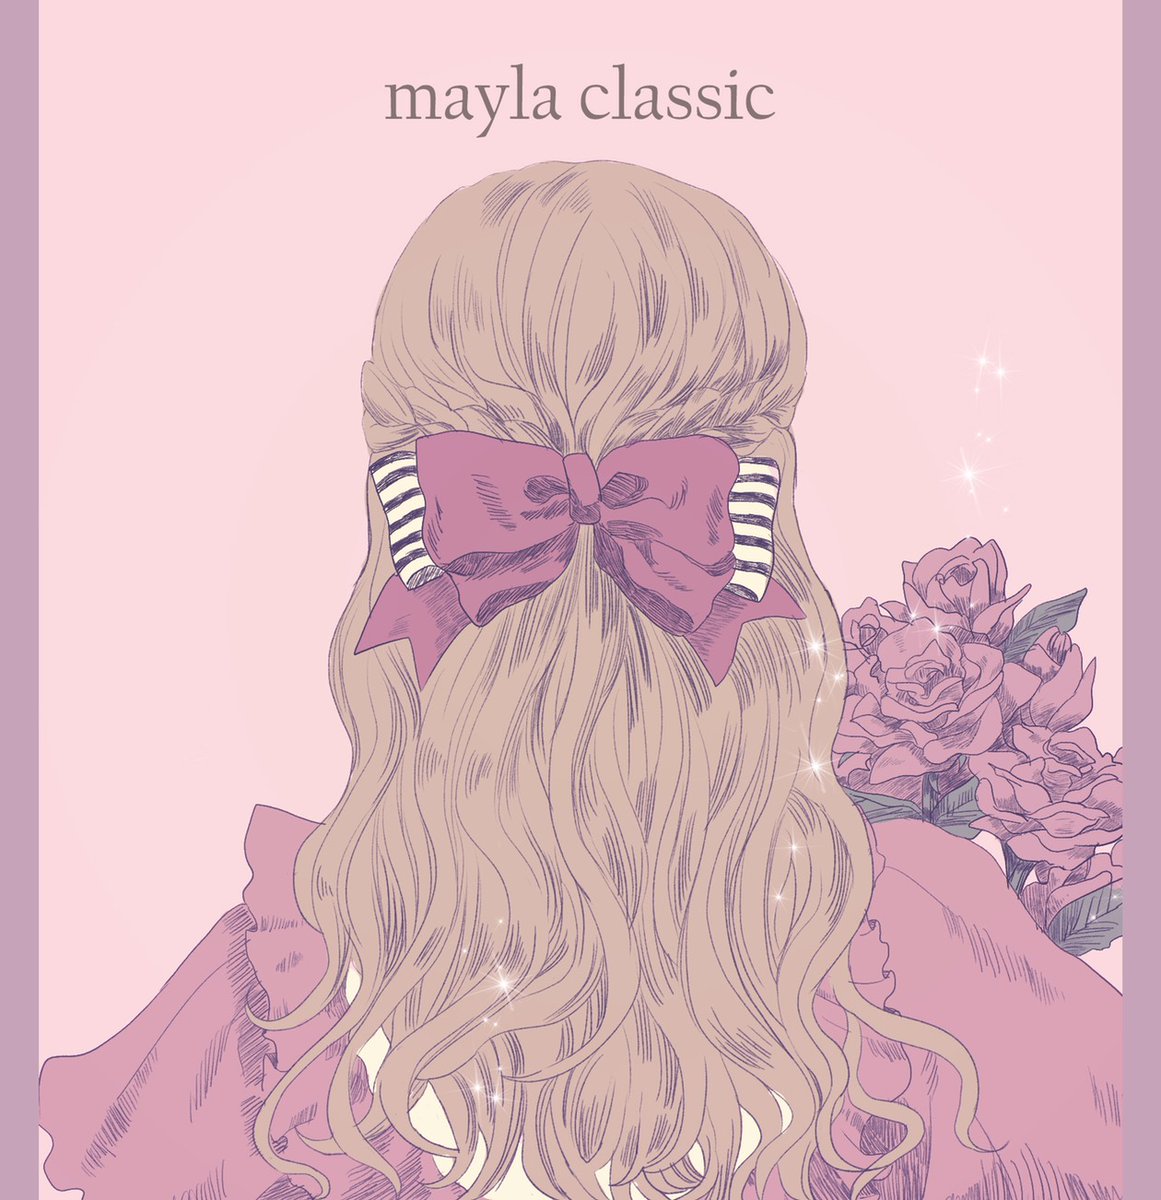 Mayla Classic Twitterissa 皆さん 見て下さい Maylaclassic のクリエイターほのかちゃんが さらりと描いた イラストがすごく可愛かったので フリーアイコン にしてもらいました プリンセスコレクションのお姫様たち Twitterやlineのアイコンなどお好きな